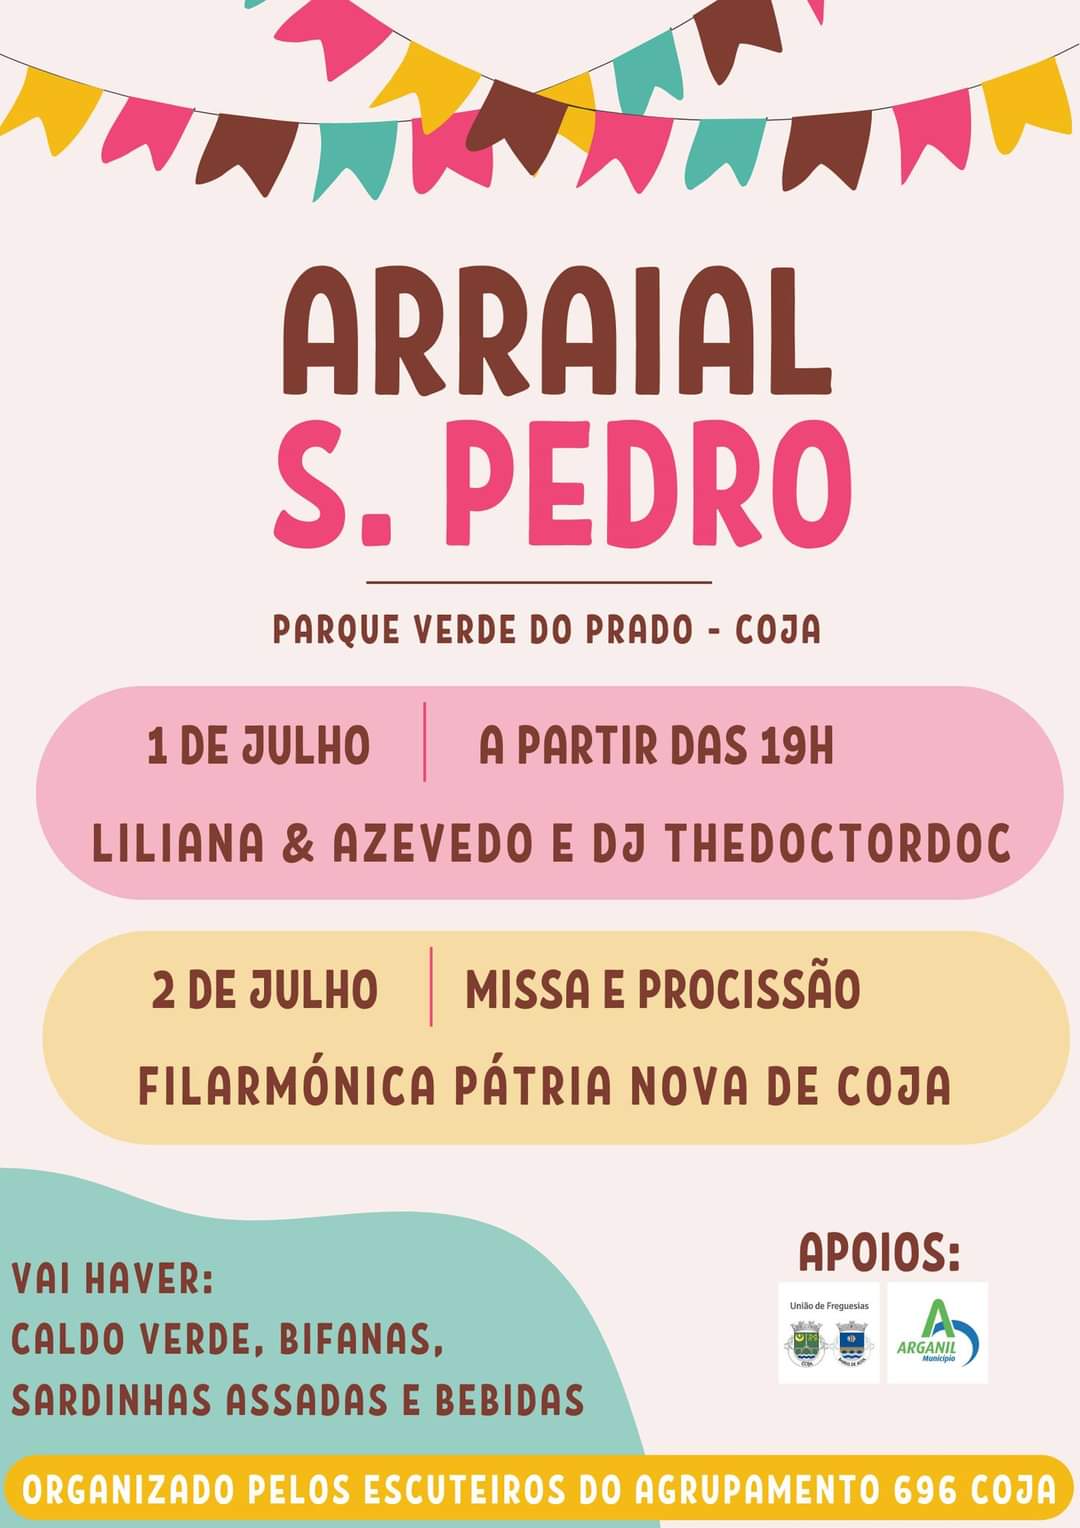 1 Julho - 19:00/ 24:00 - Arraial S. Pedro (Parque Verde do Prado)